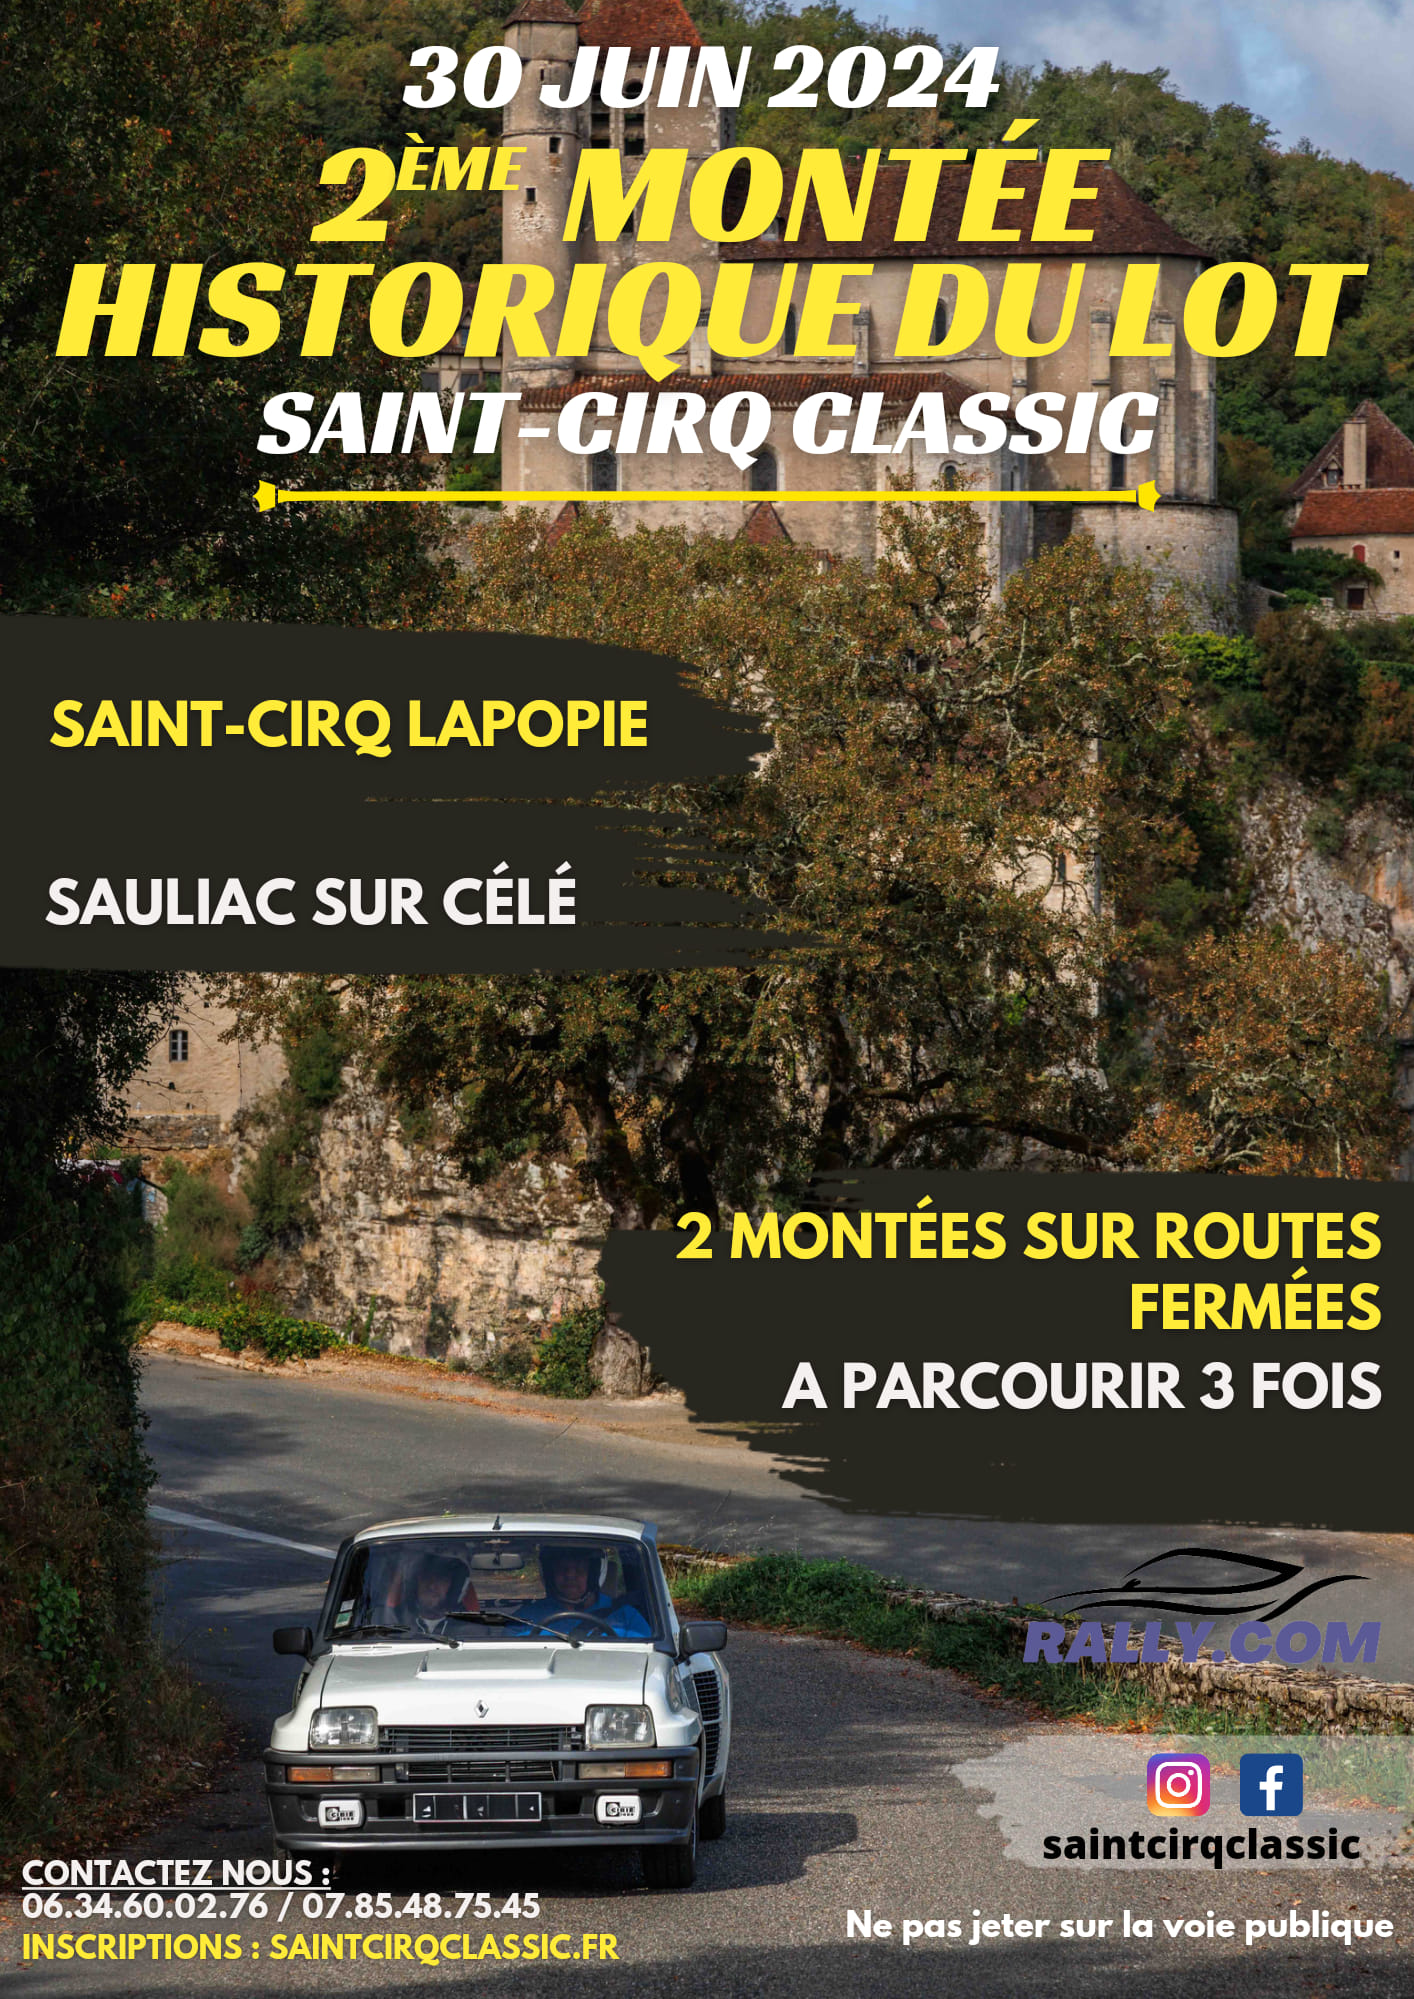 Figeac : Saint-Cirq classic, 2ème montée historique du Lot